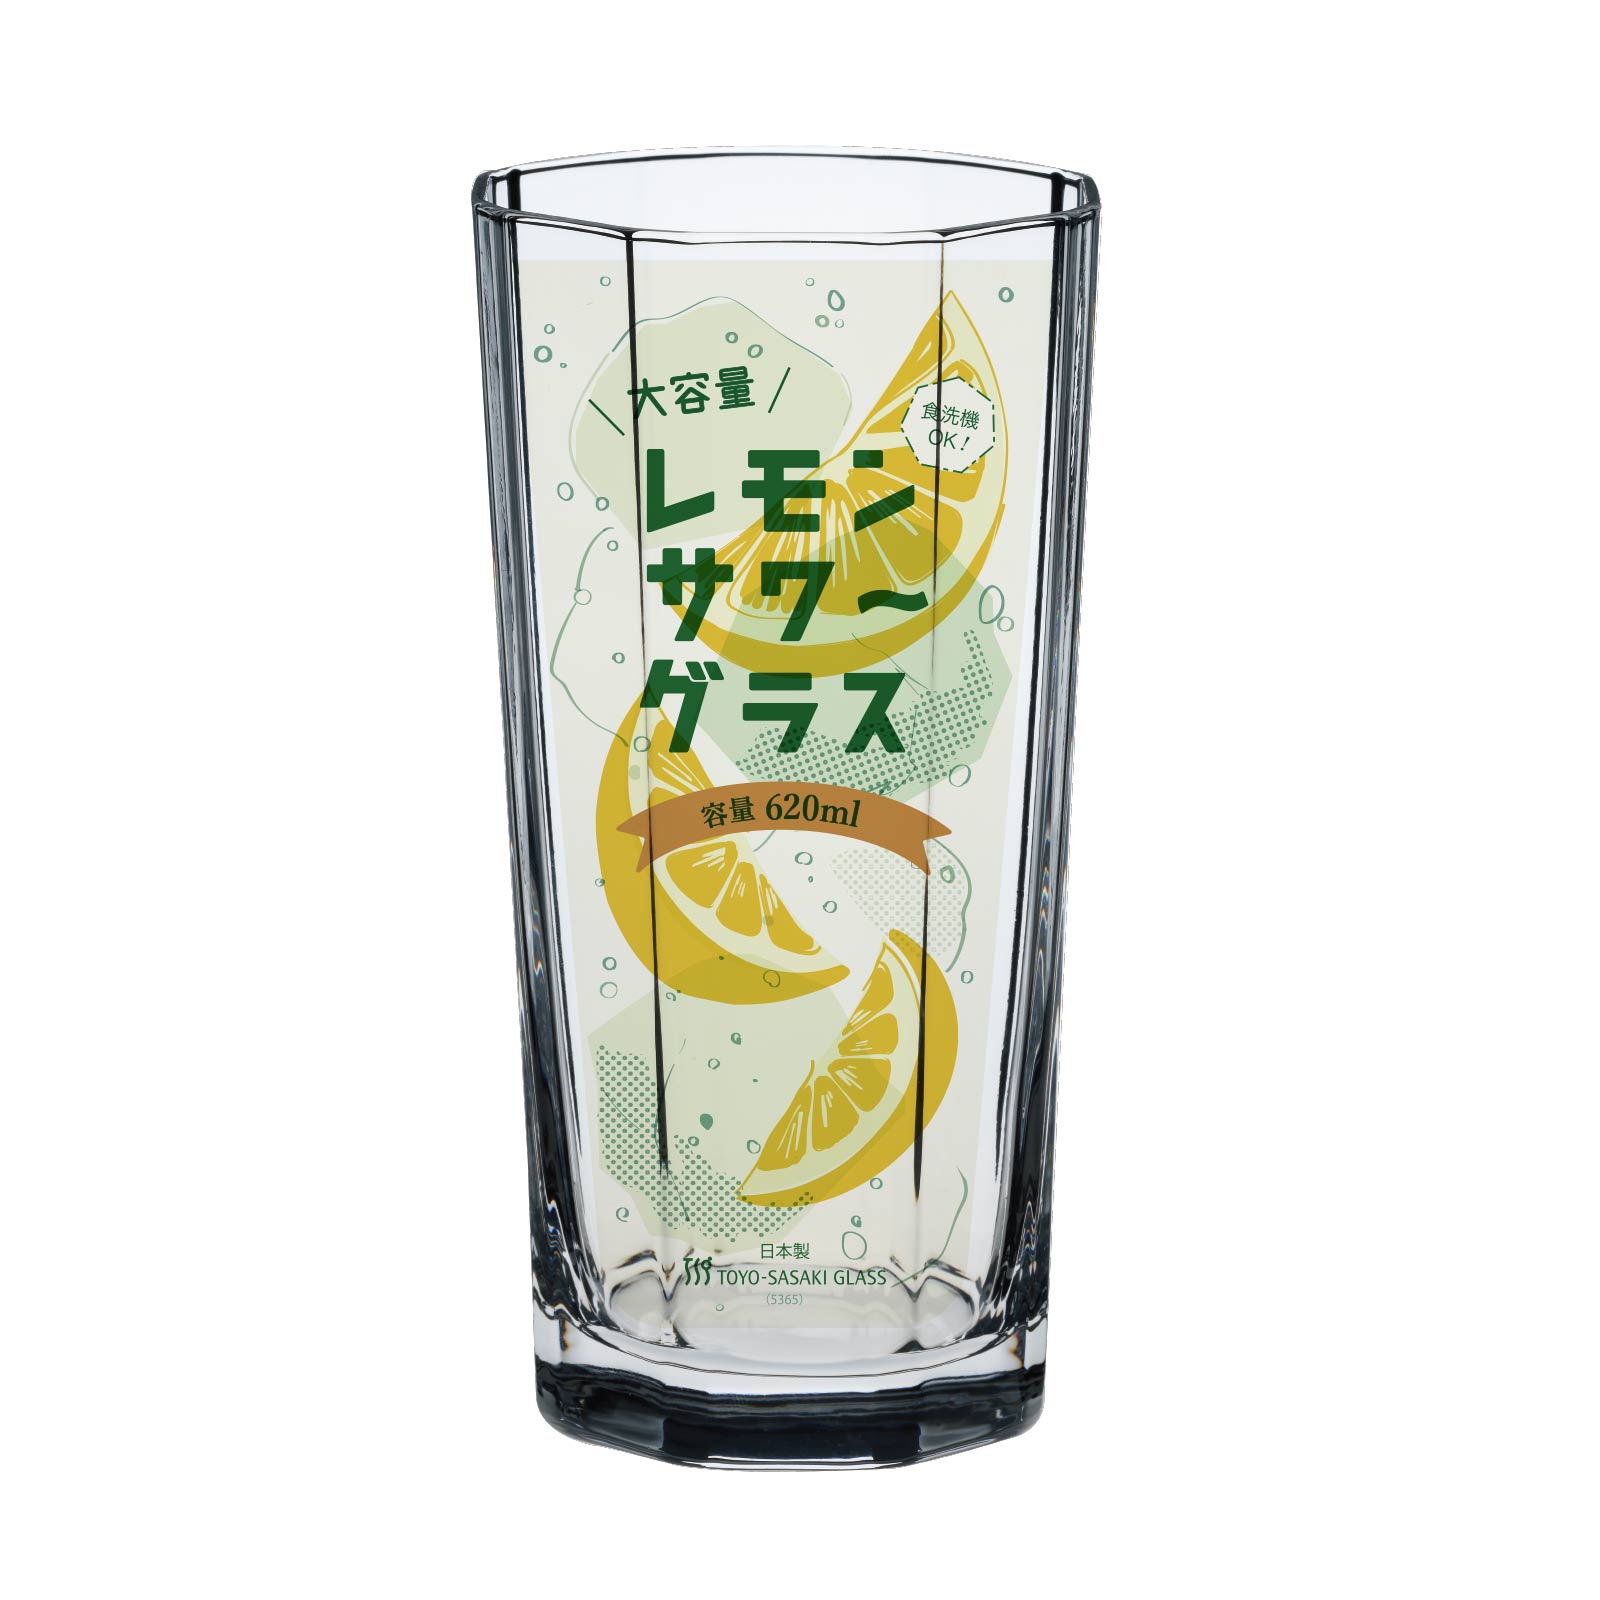 東洋佐々木ガラス ワイングラス ラーラ 食洗機対応 日本製 225ml 60個セット (ケース販売) 32835HS